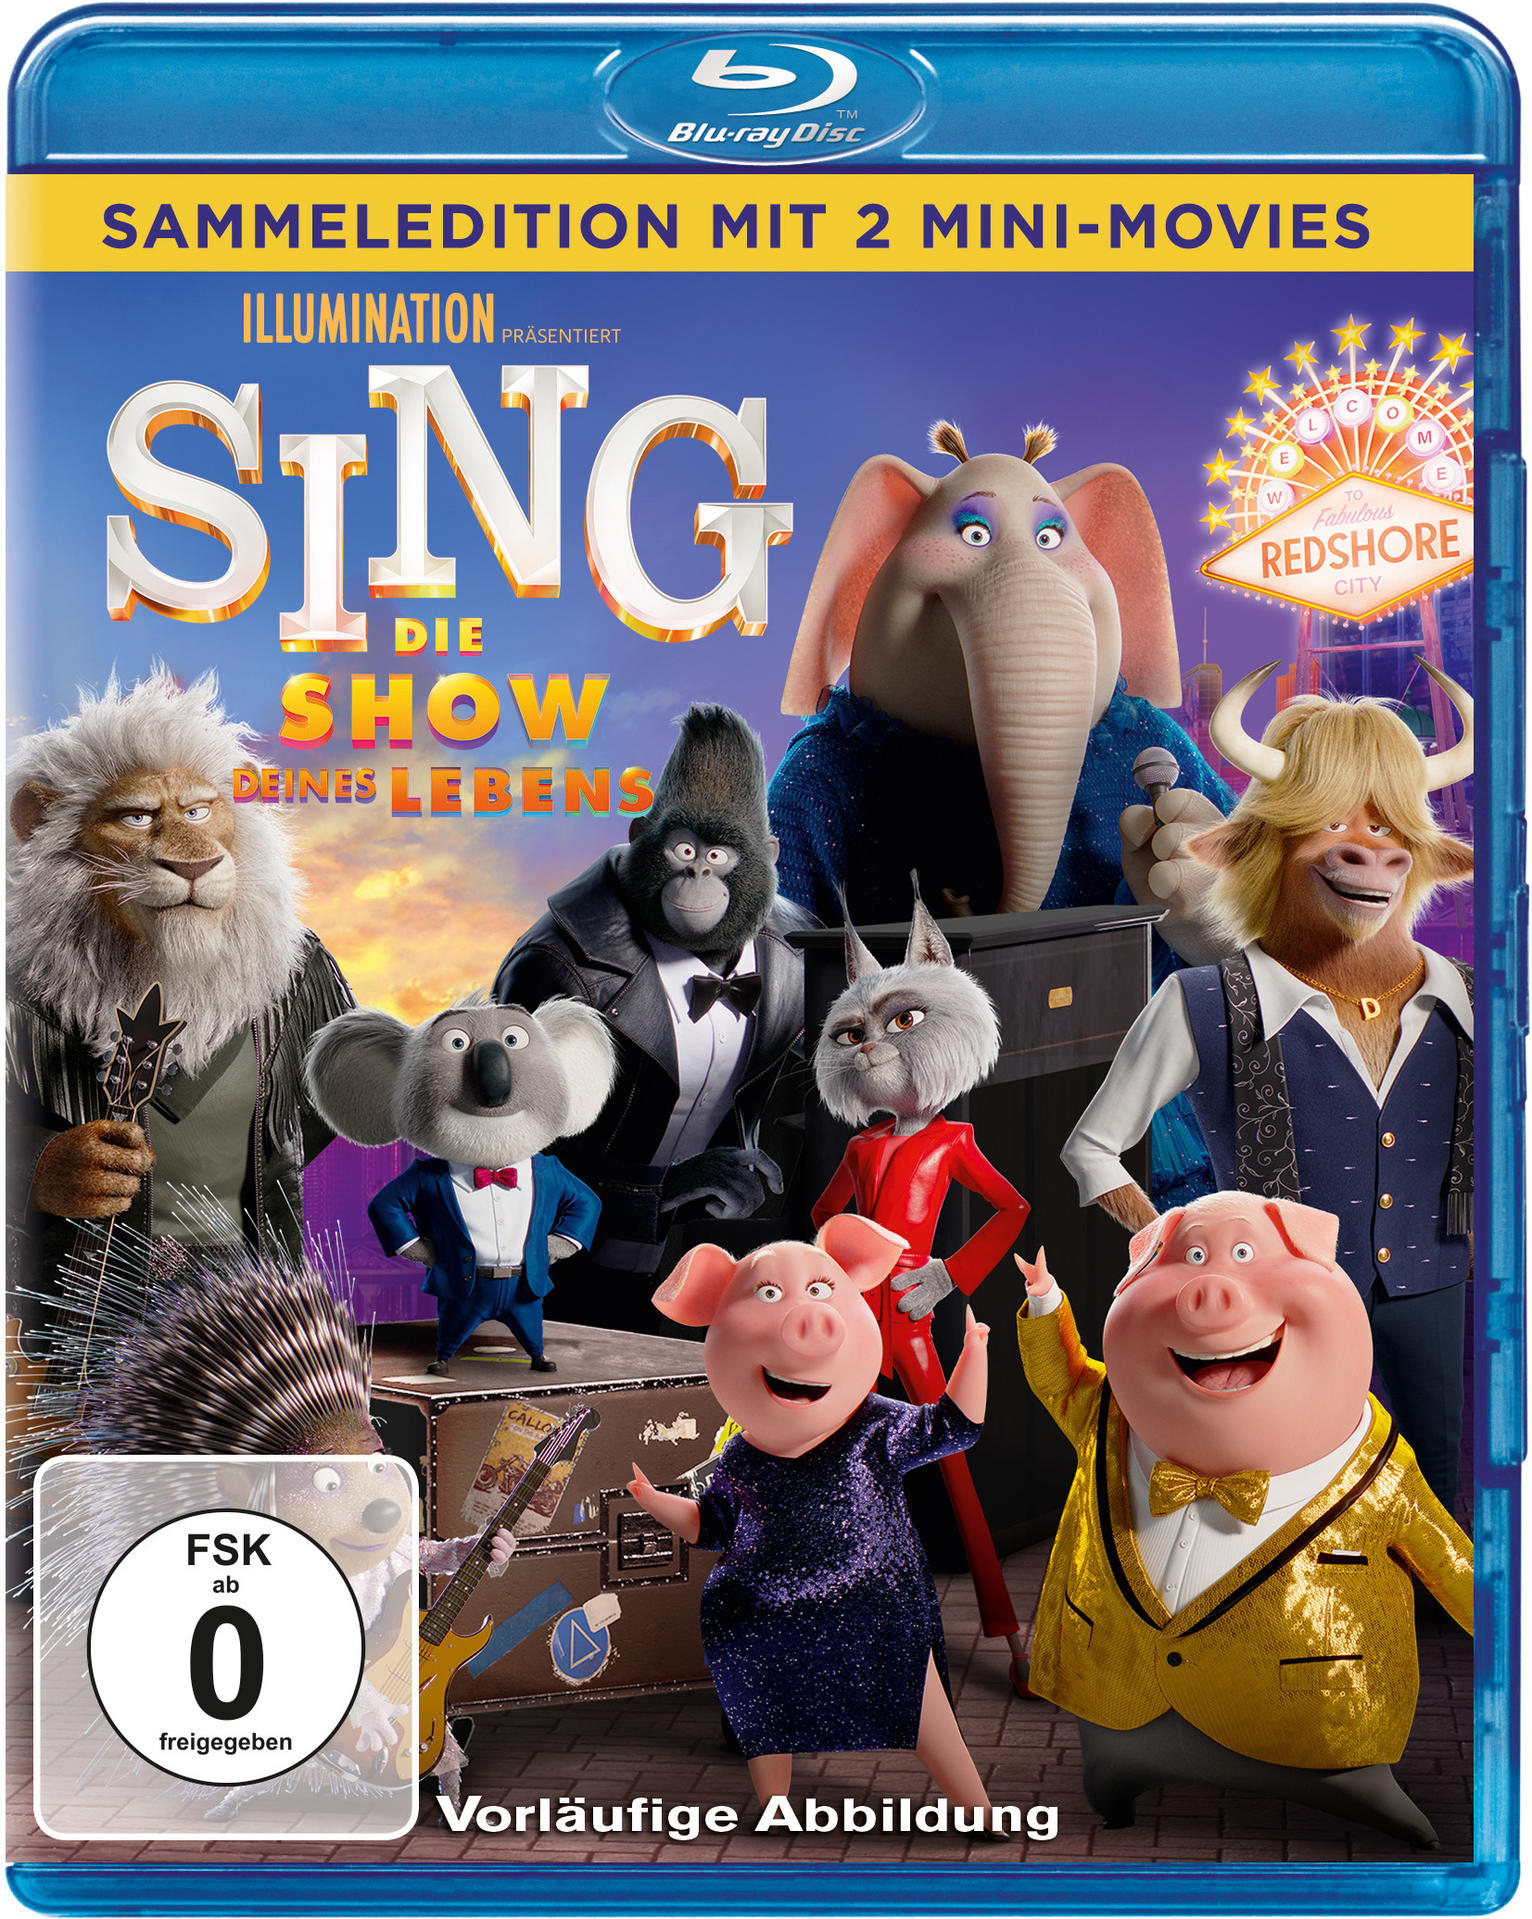 Sing - Show Die deines Lebens Blu-ray